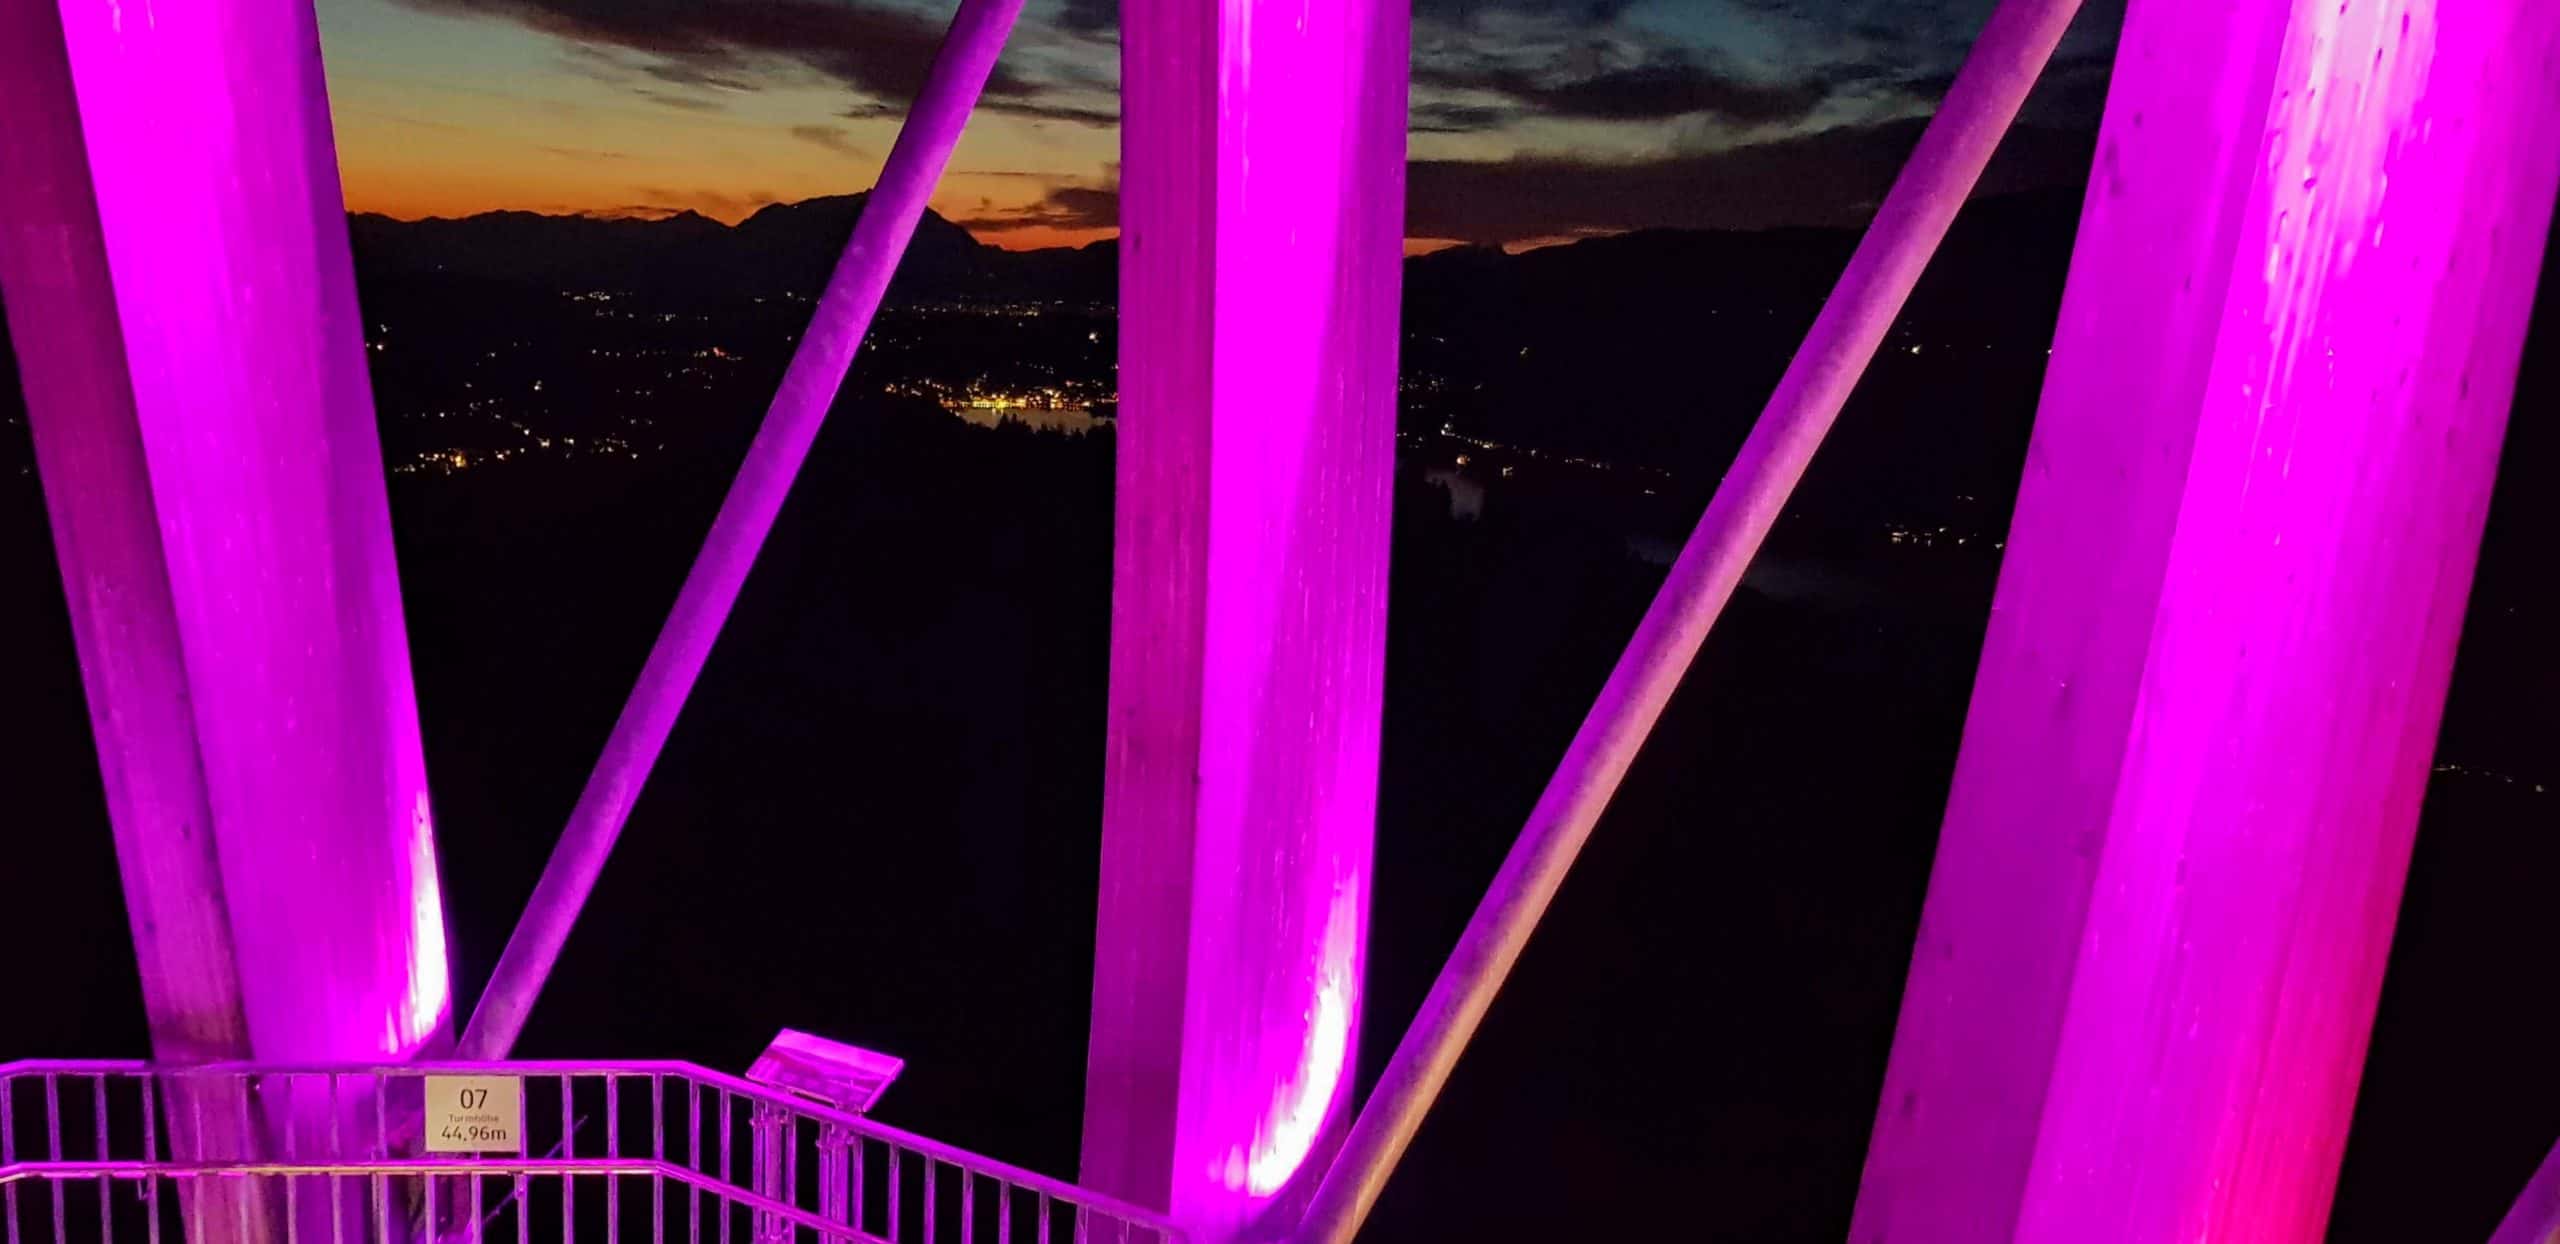 Abendliche Aussicht am Pyramidenkogel - Blick Richtung Velden am Wörthersee in Kärnten, Österreich